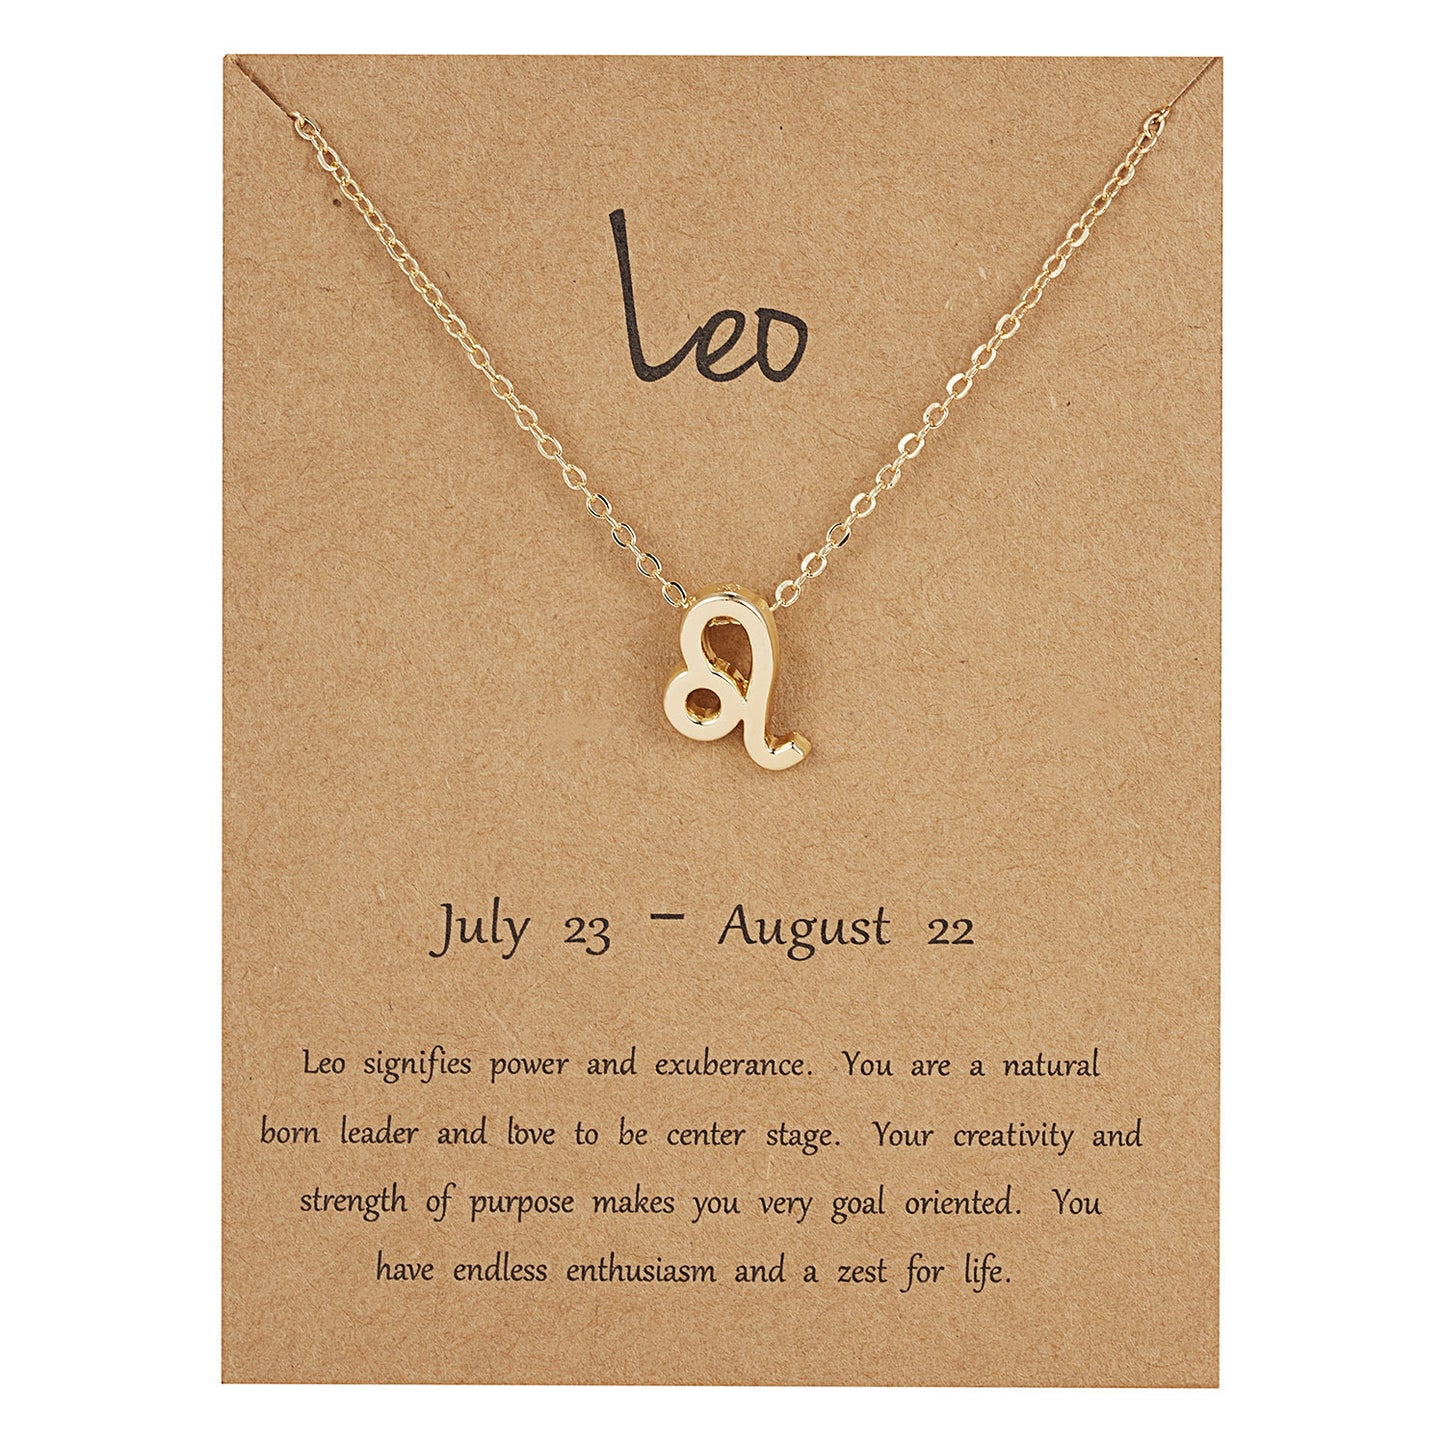 Zodiac necklace on a card - ne481